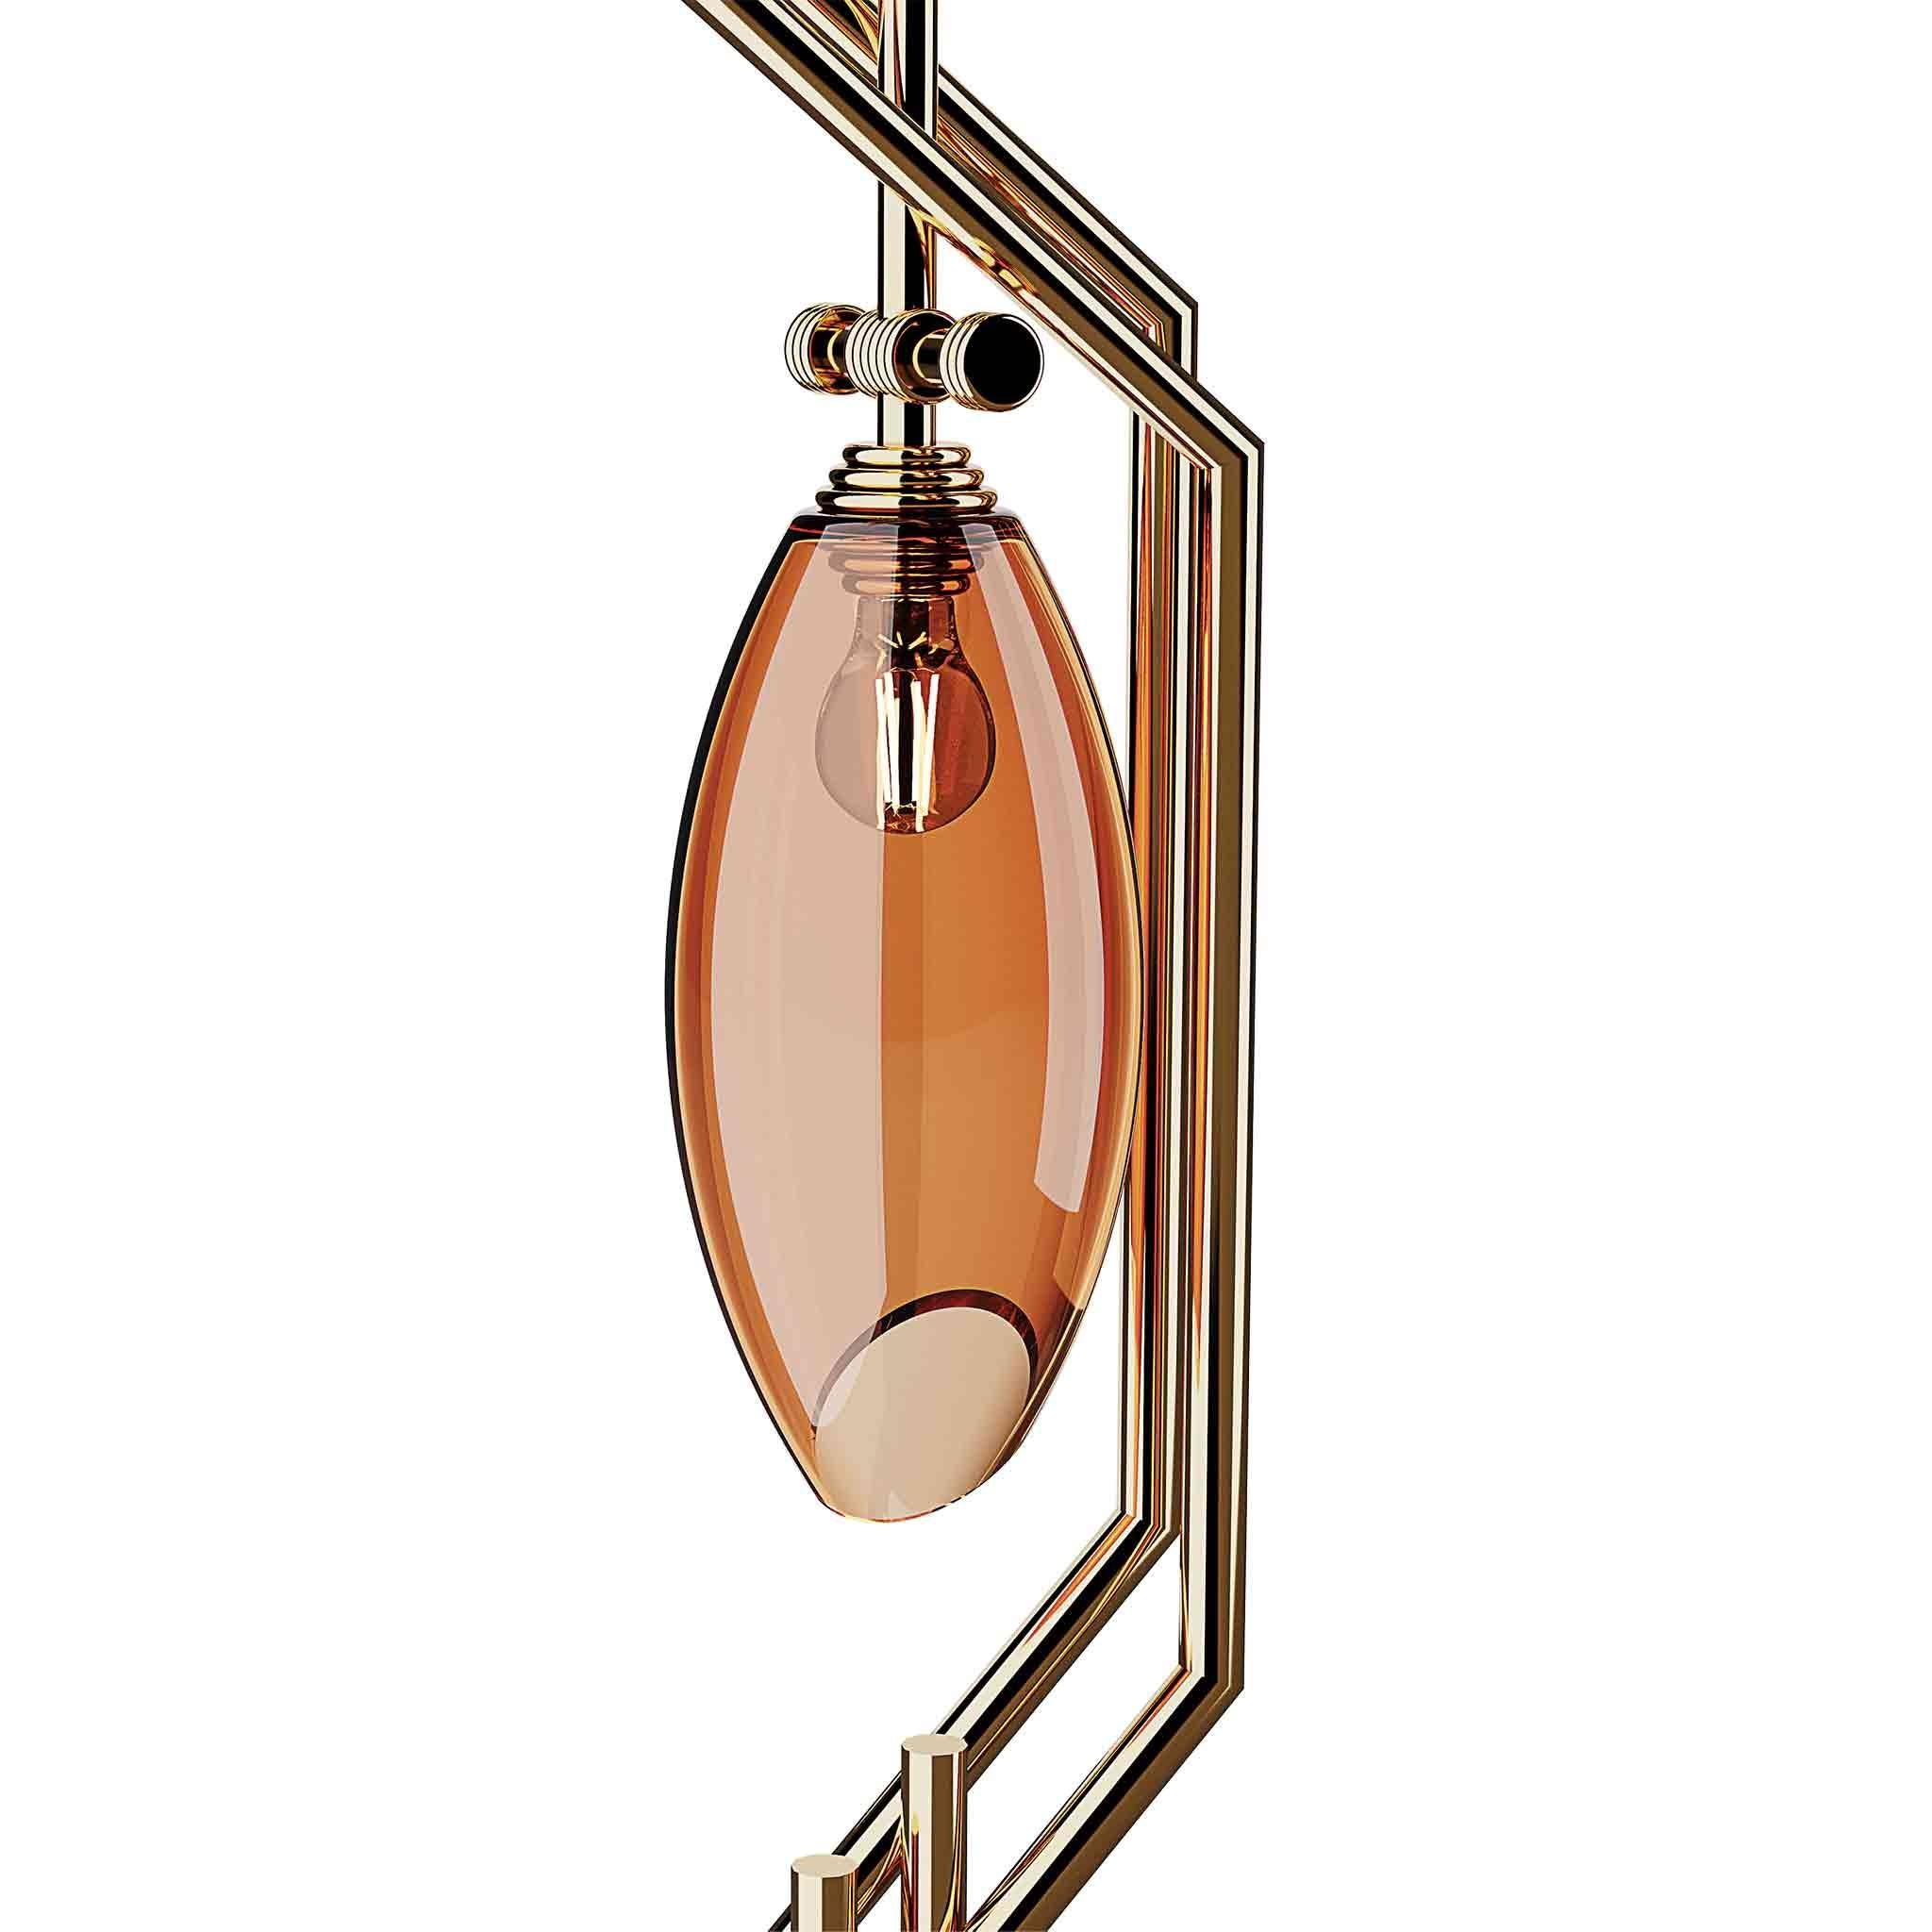 Le lampadaire Cocoon a été inspiré par les formes des bijoux Art déco. Un lampadaire moderne conçu pour apporter élégance et caractère à tout espace de vie. Un lampadaire de luxe pour un projet de décoration intérieure haut de gamme.

MATERIAL :